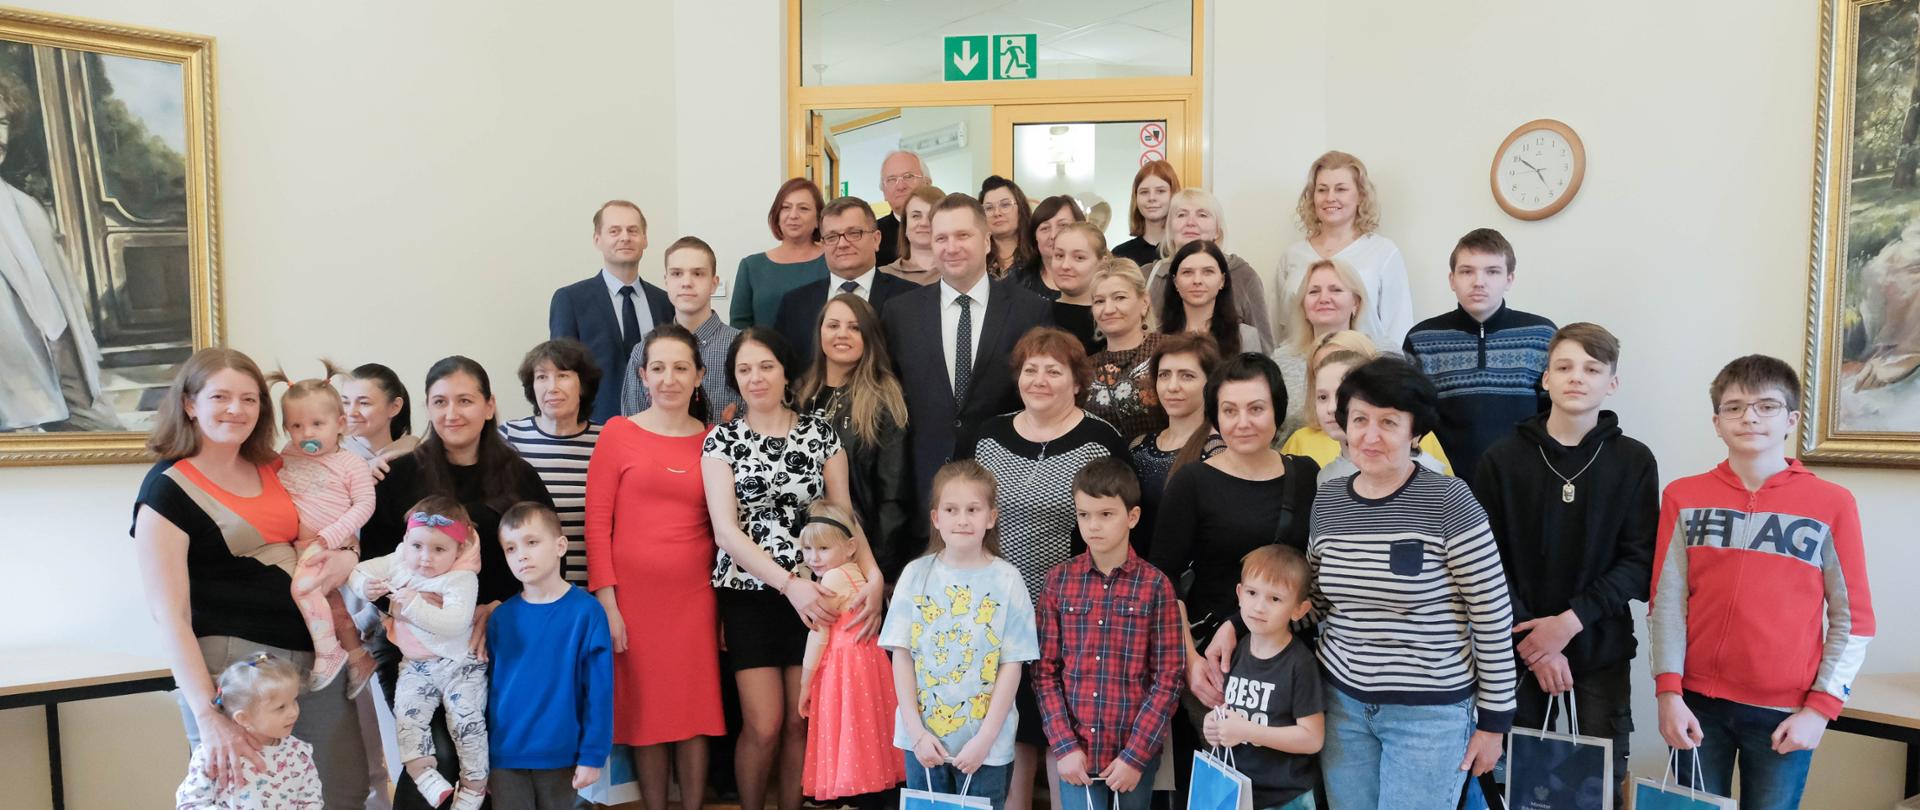 Minister Przemysław czarnek w grupie dzieci i ich matek. Dzieci trzymają w ręku torby z prezentami. W tle zegar i obrazy 